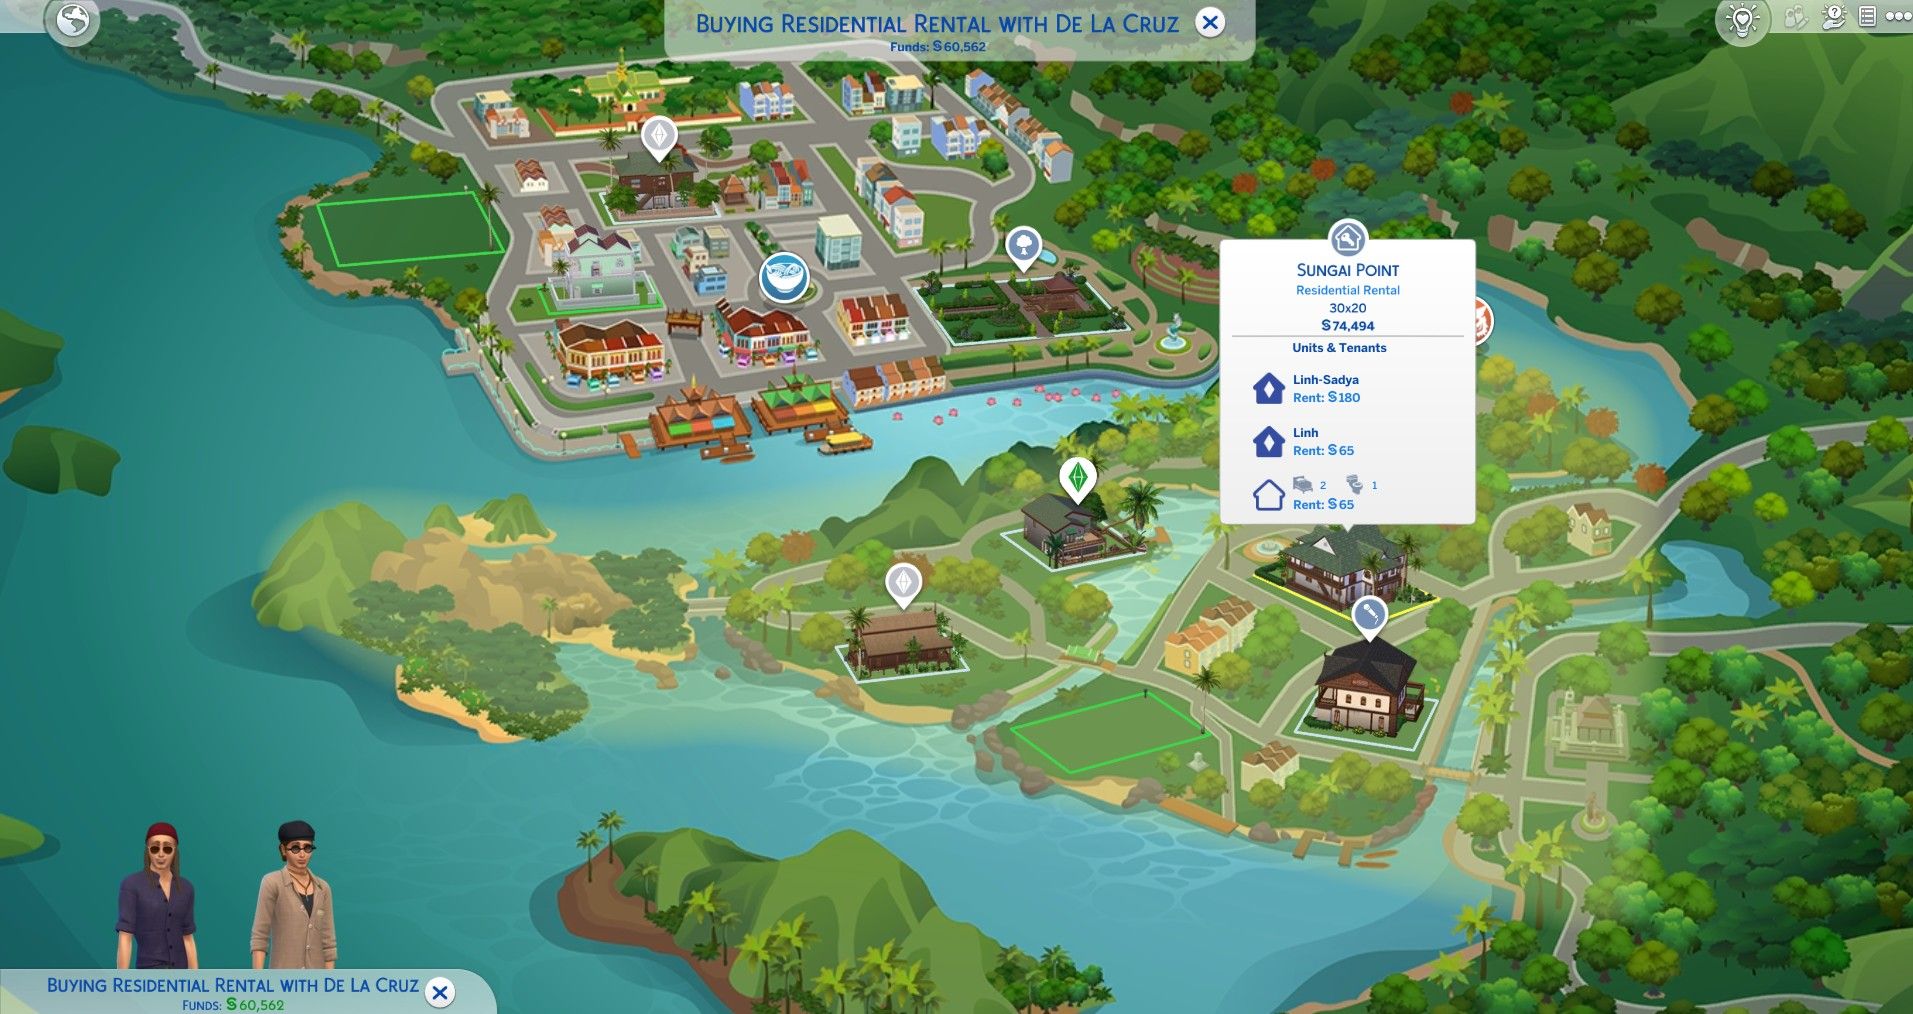 Сунгай Пойнт жилая недвижимость в аренду Томаранг The Sims 4 в аренду купить в аренду